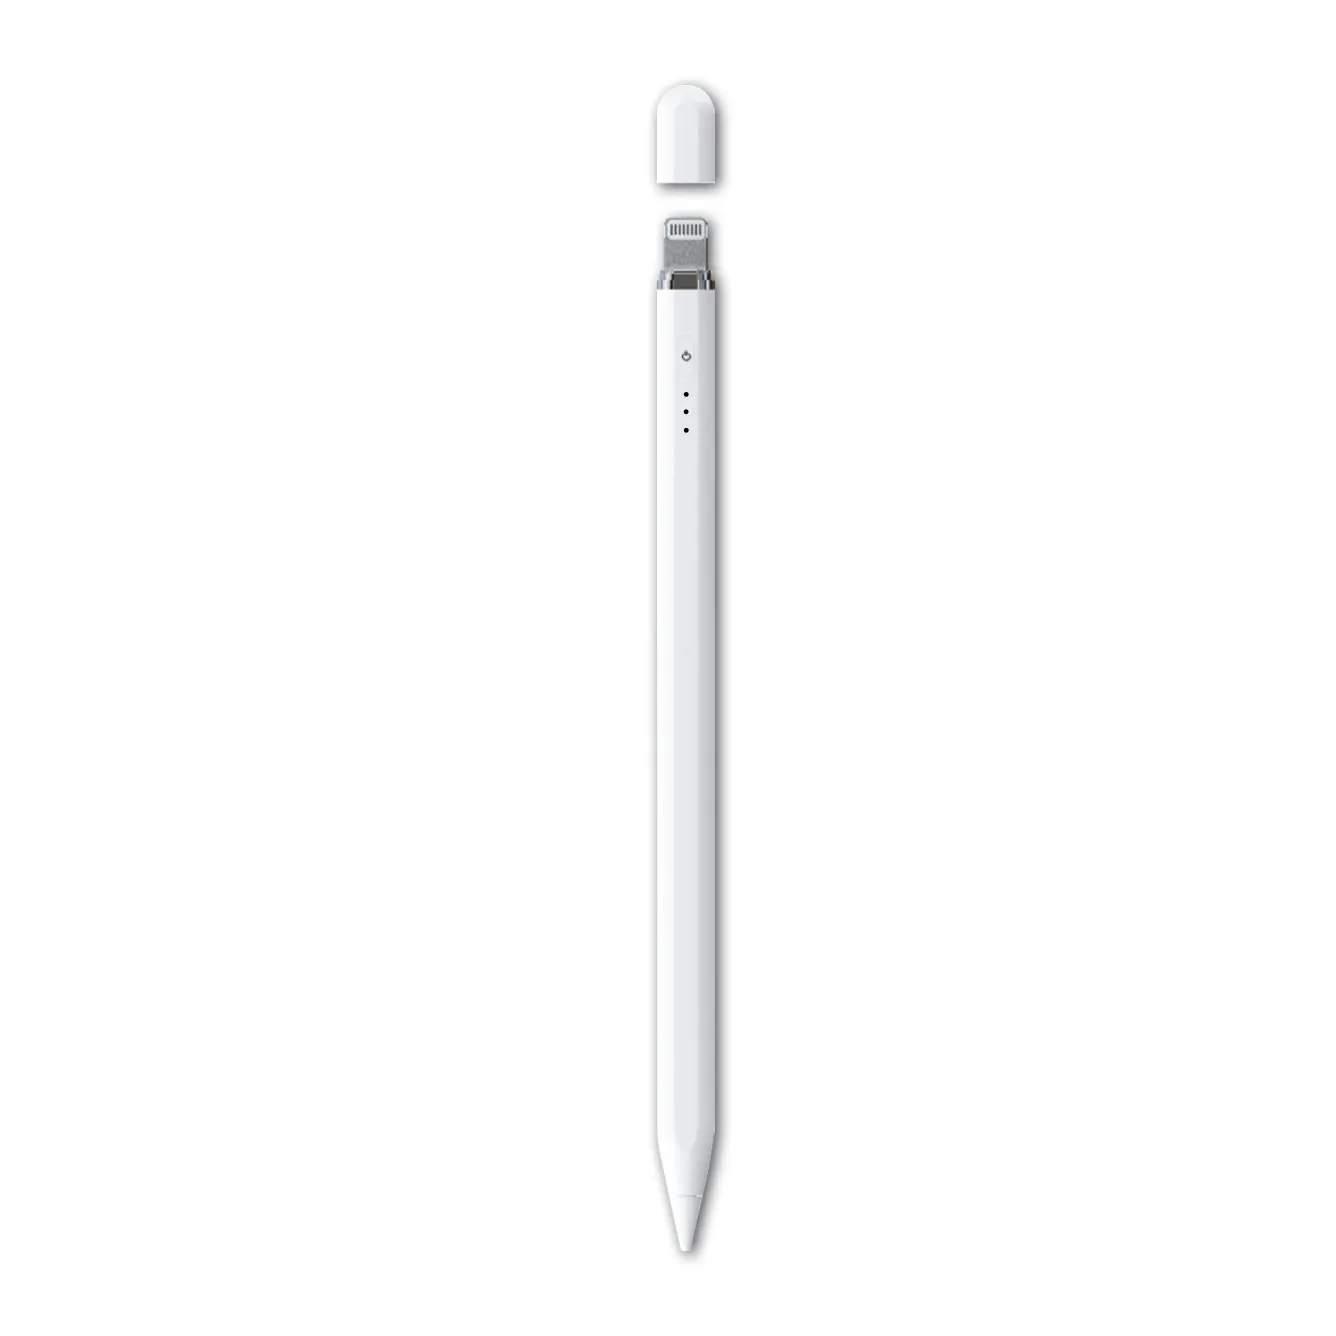 Promoción Oficina Escuela Universal OEM ODM Plug-In iPad Carga Stylus Pen Sensible Control táctil para iPad Logotipo personalizado